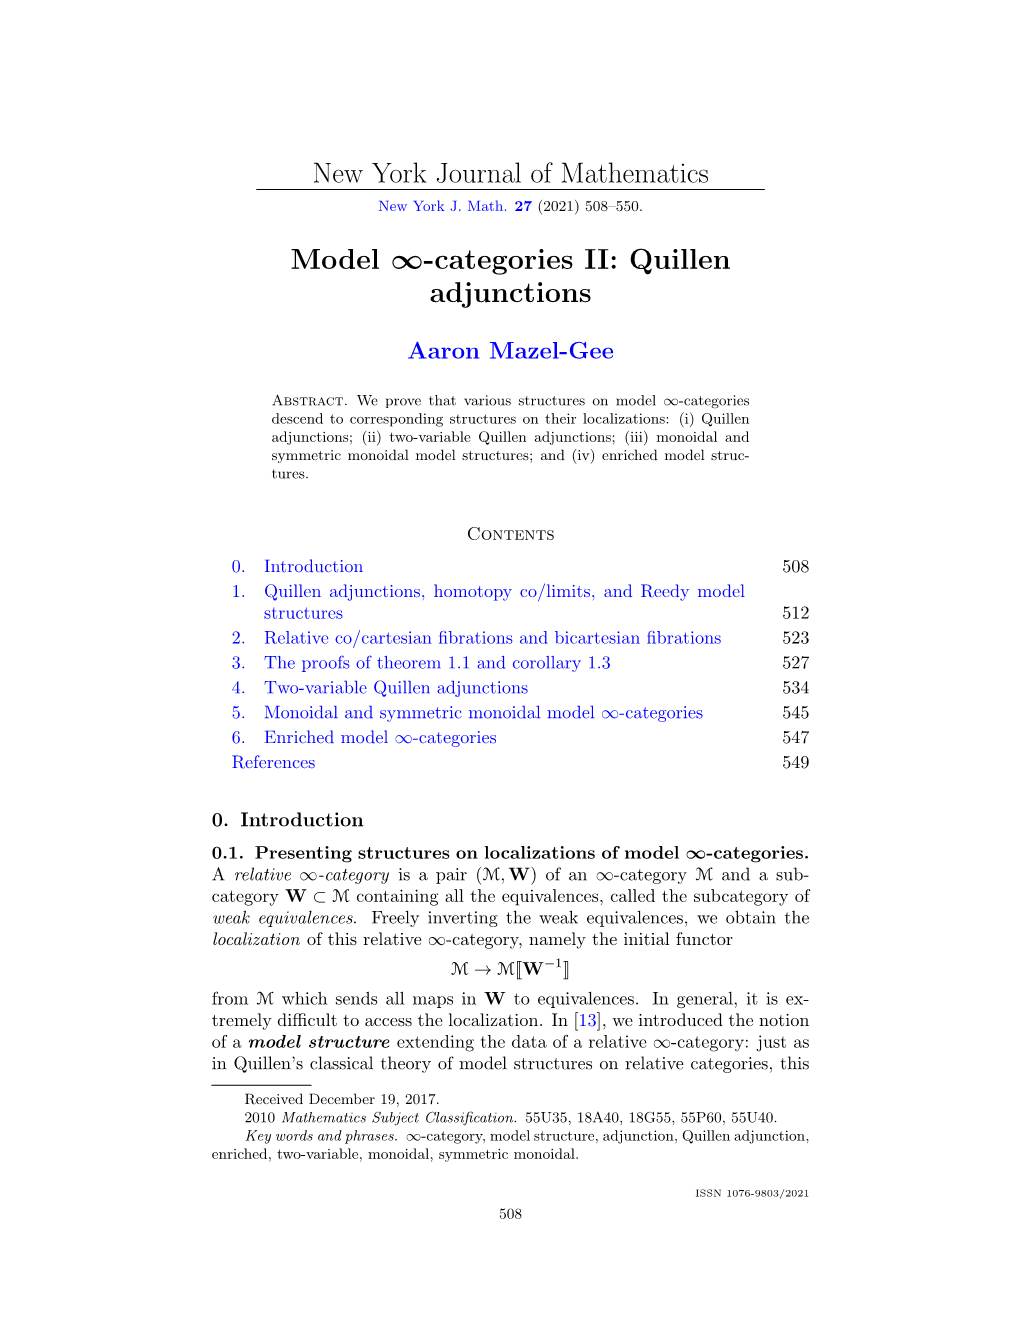 Model ∞-Categories II: Quillen Adjunctions